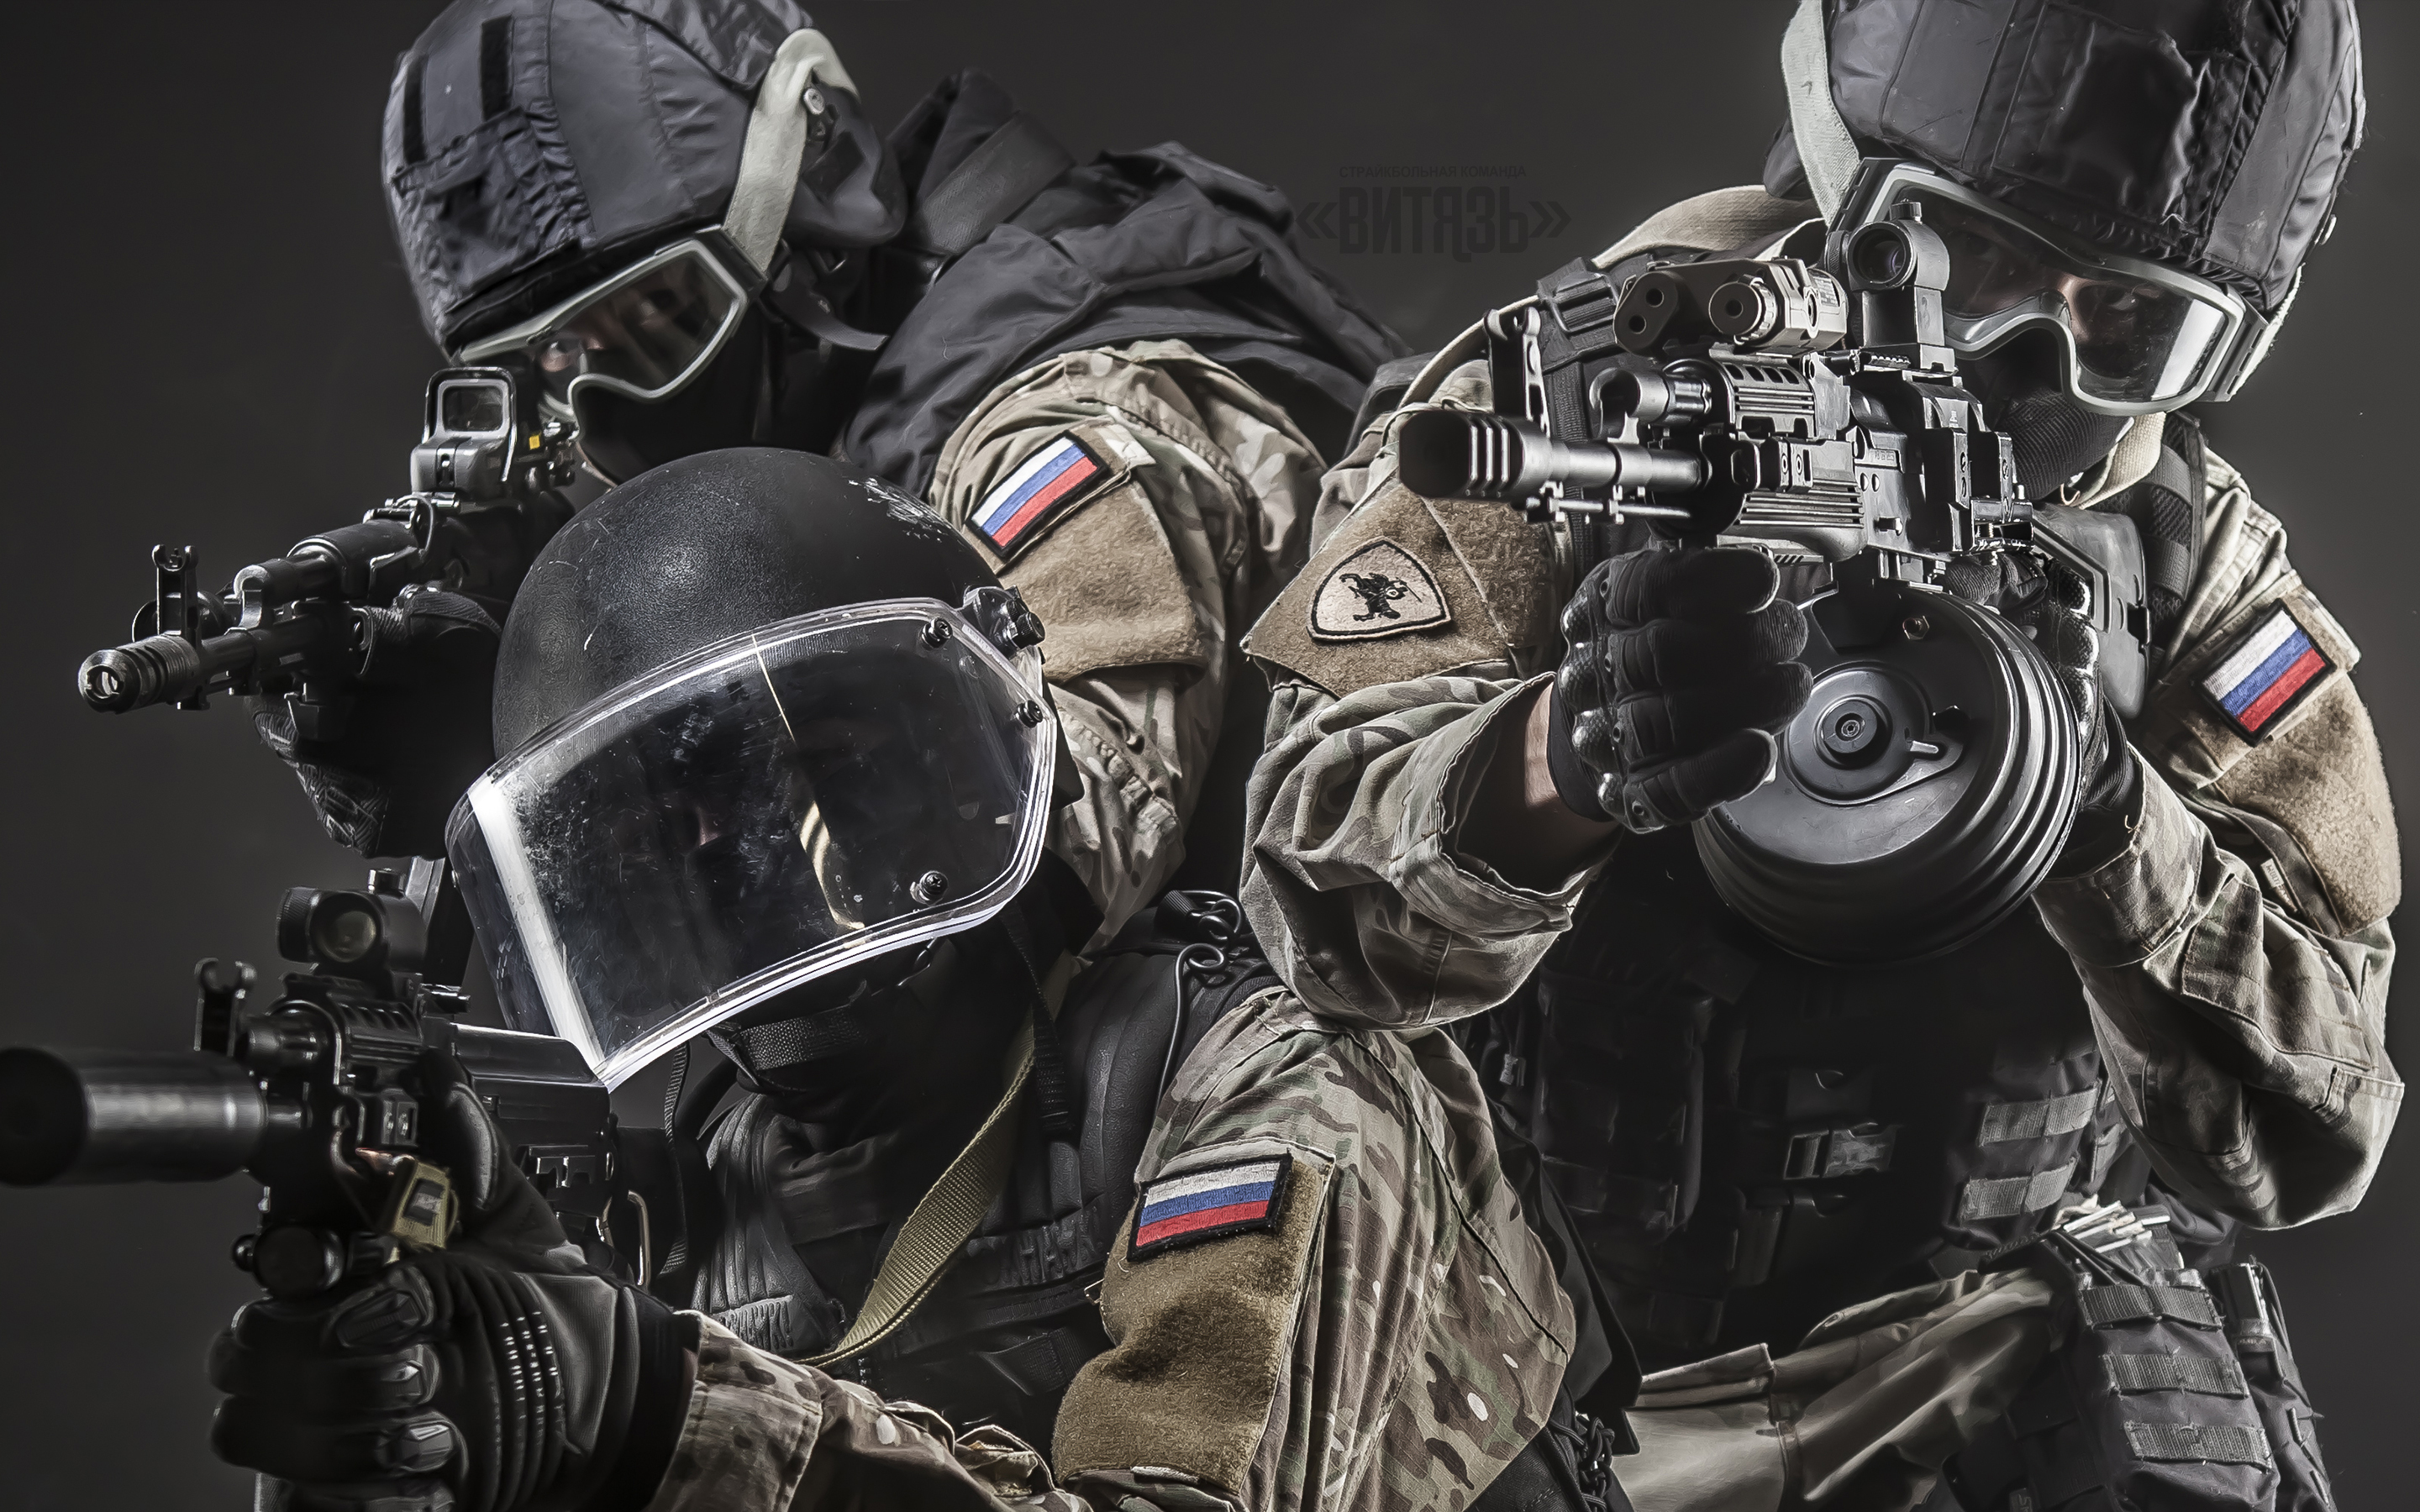 4 спецназовцы. Шлем спецназа SAS.